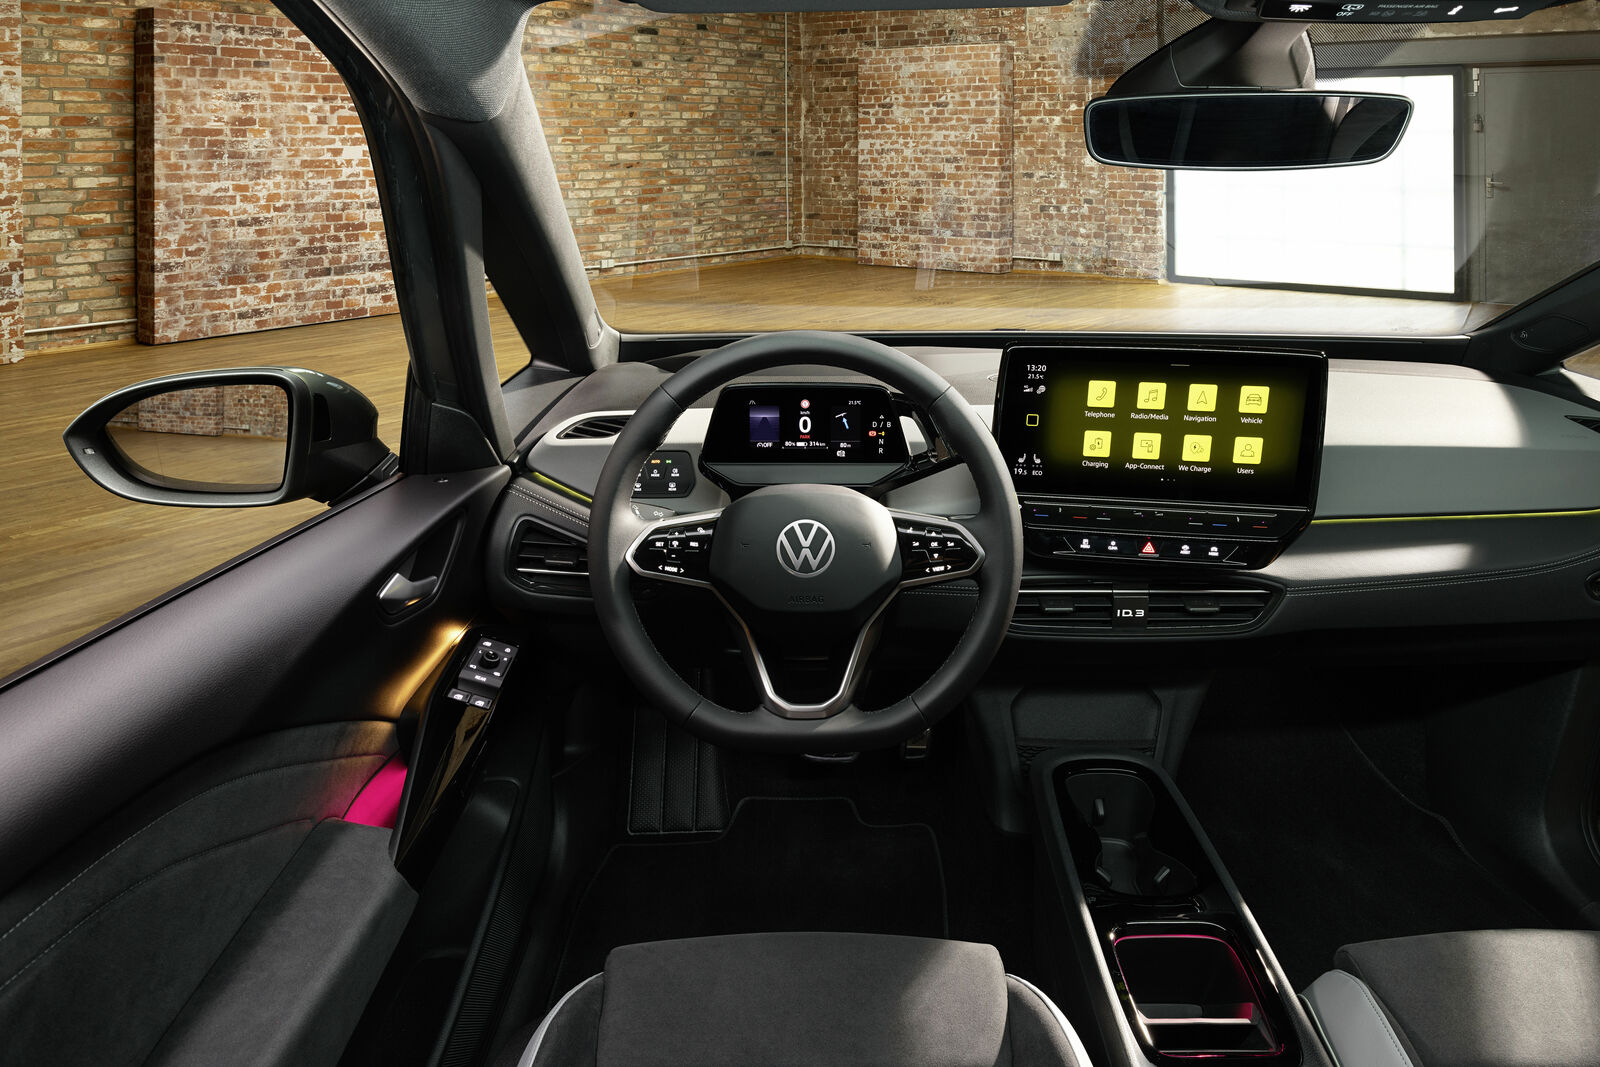 The new Volkswagen ID.3